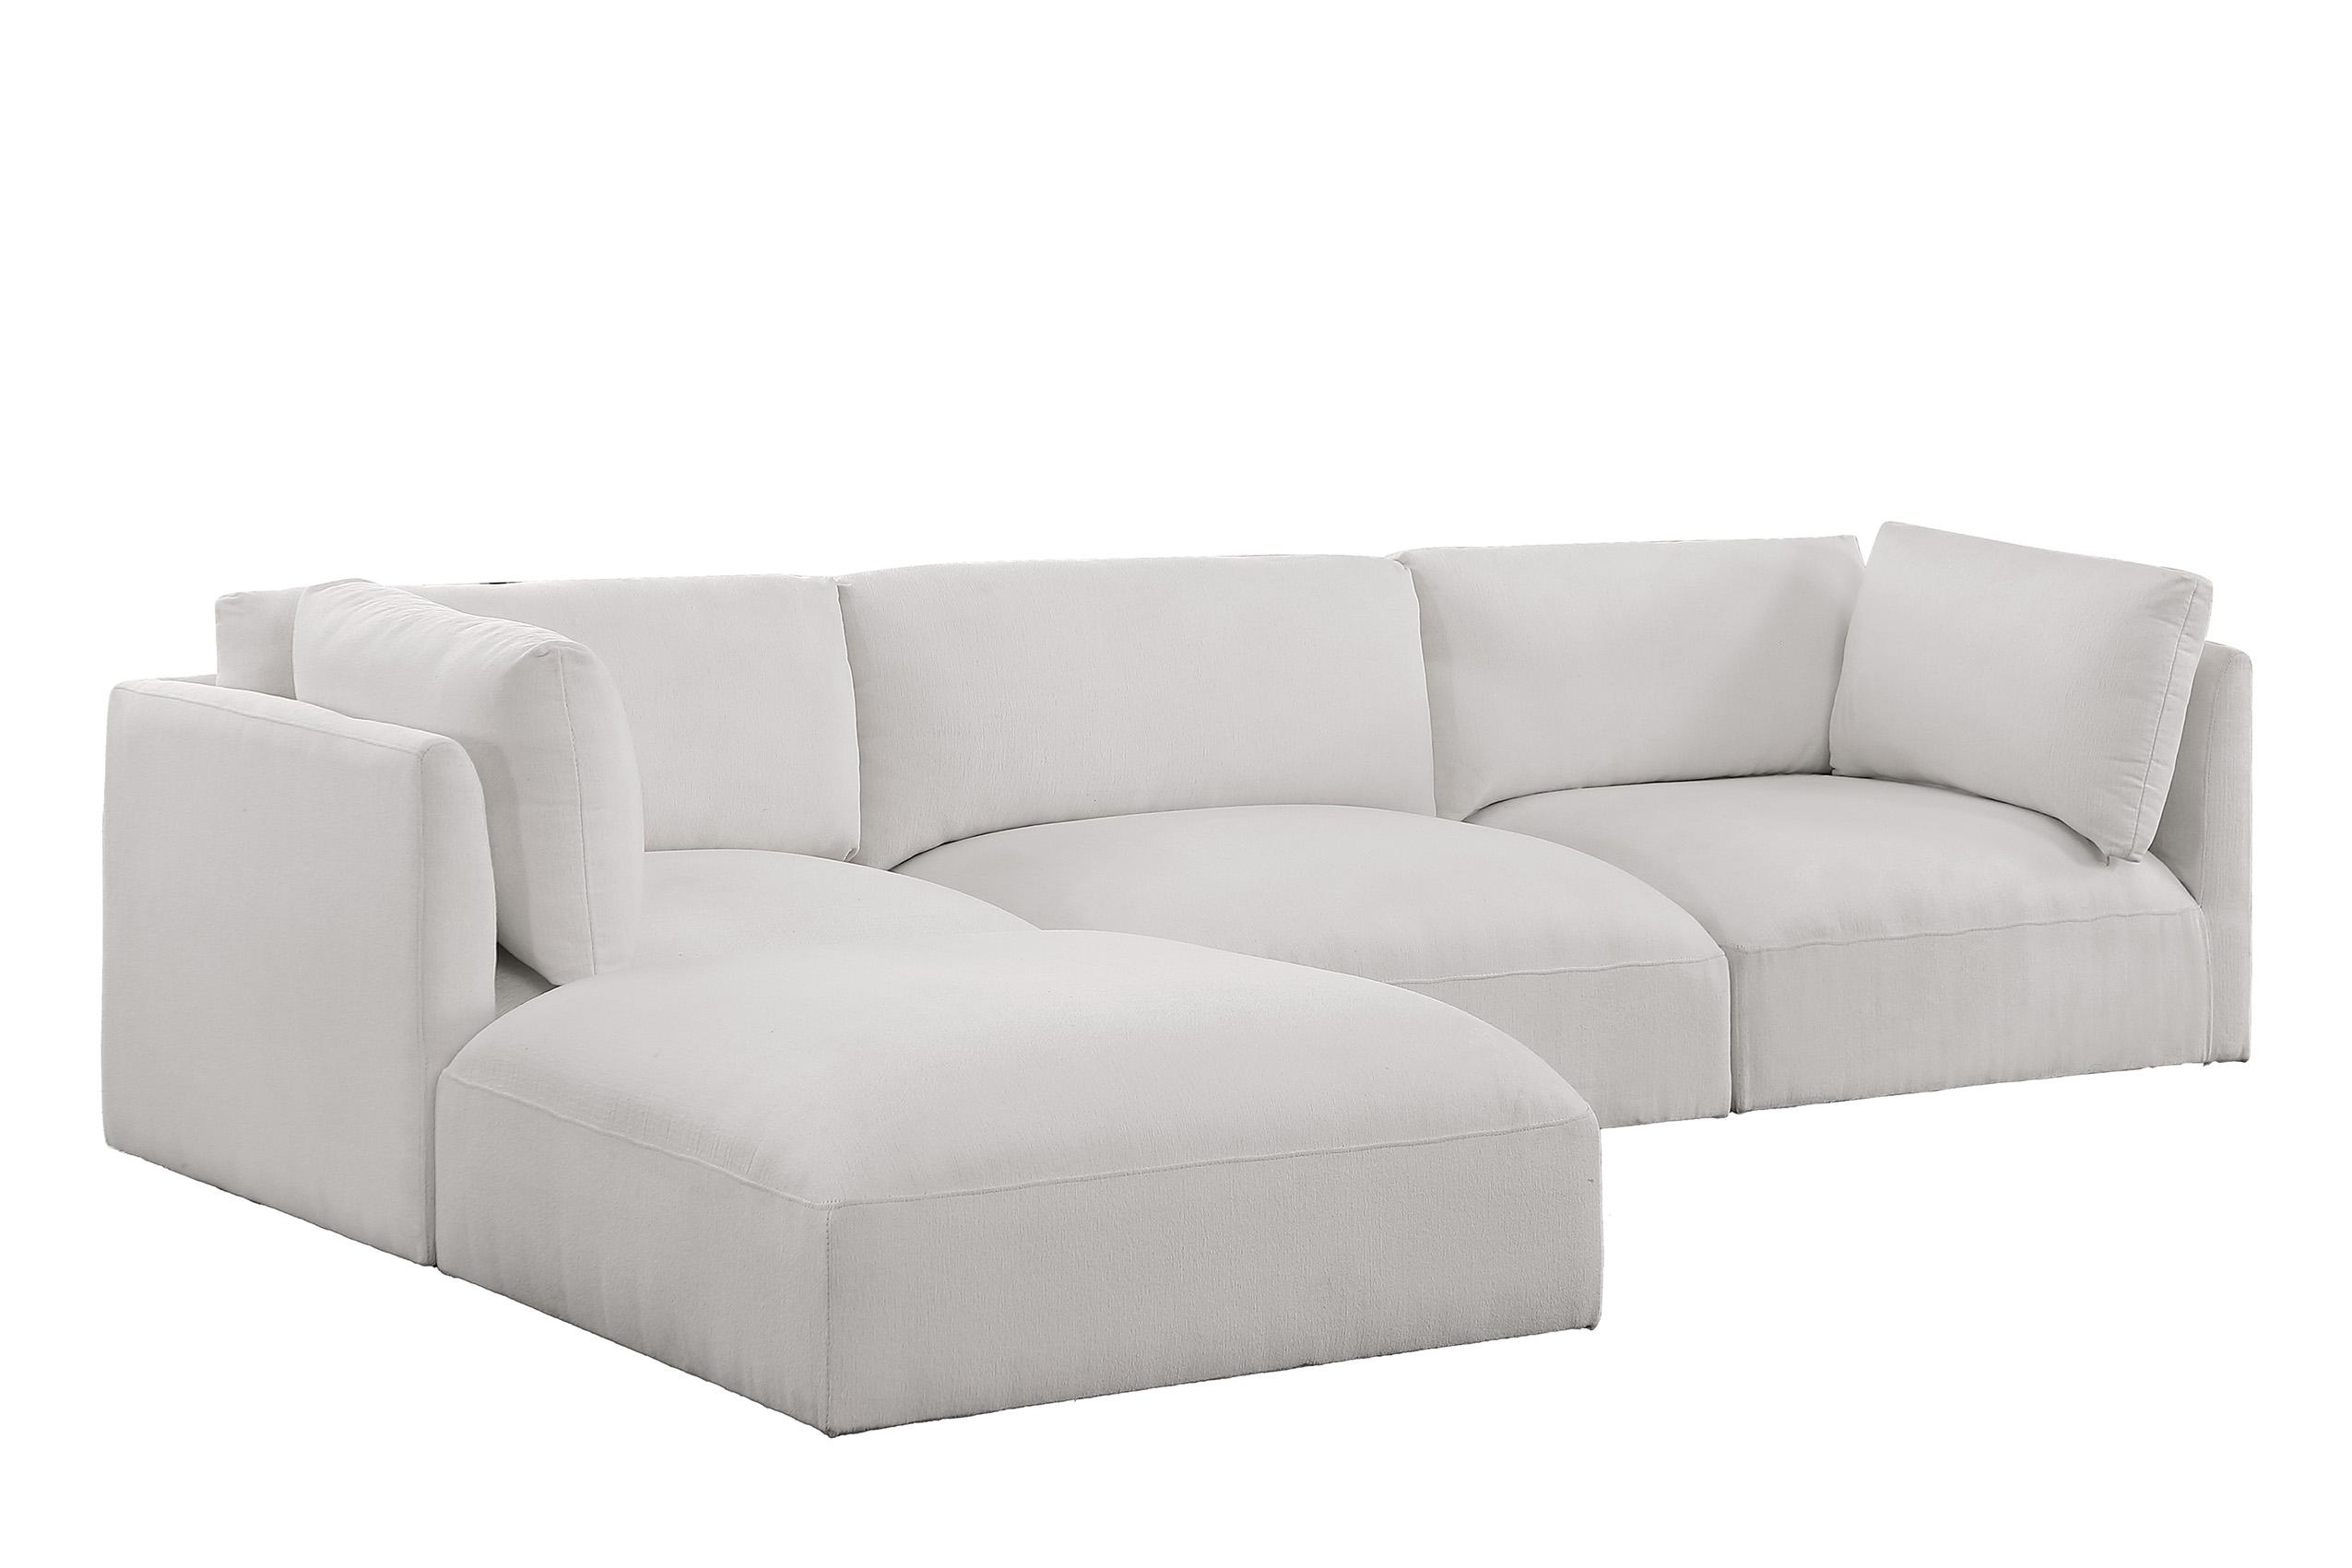 Contemporary, Modern Modular Sectional Sofa EASE 696Cream-Sec4A 696Cream-Sec4A in Cream Fabric